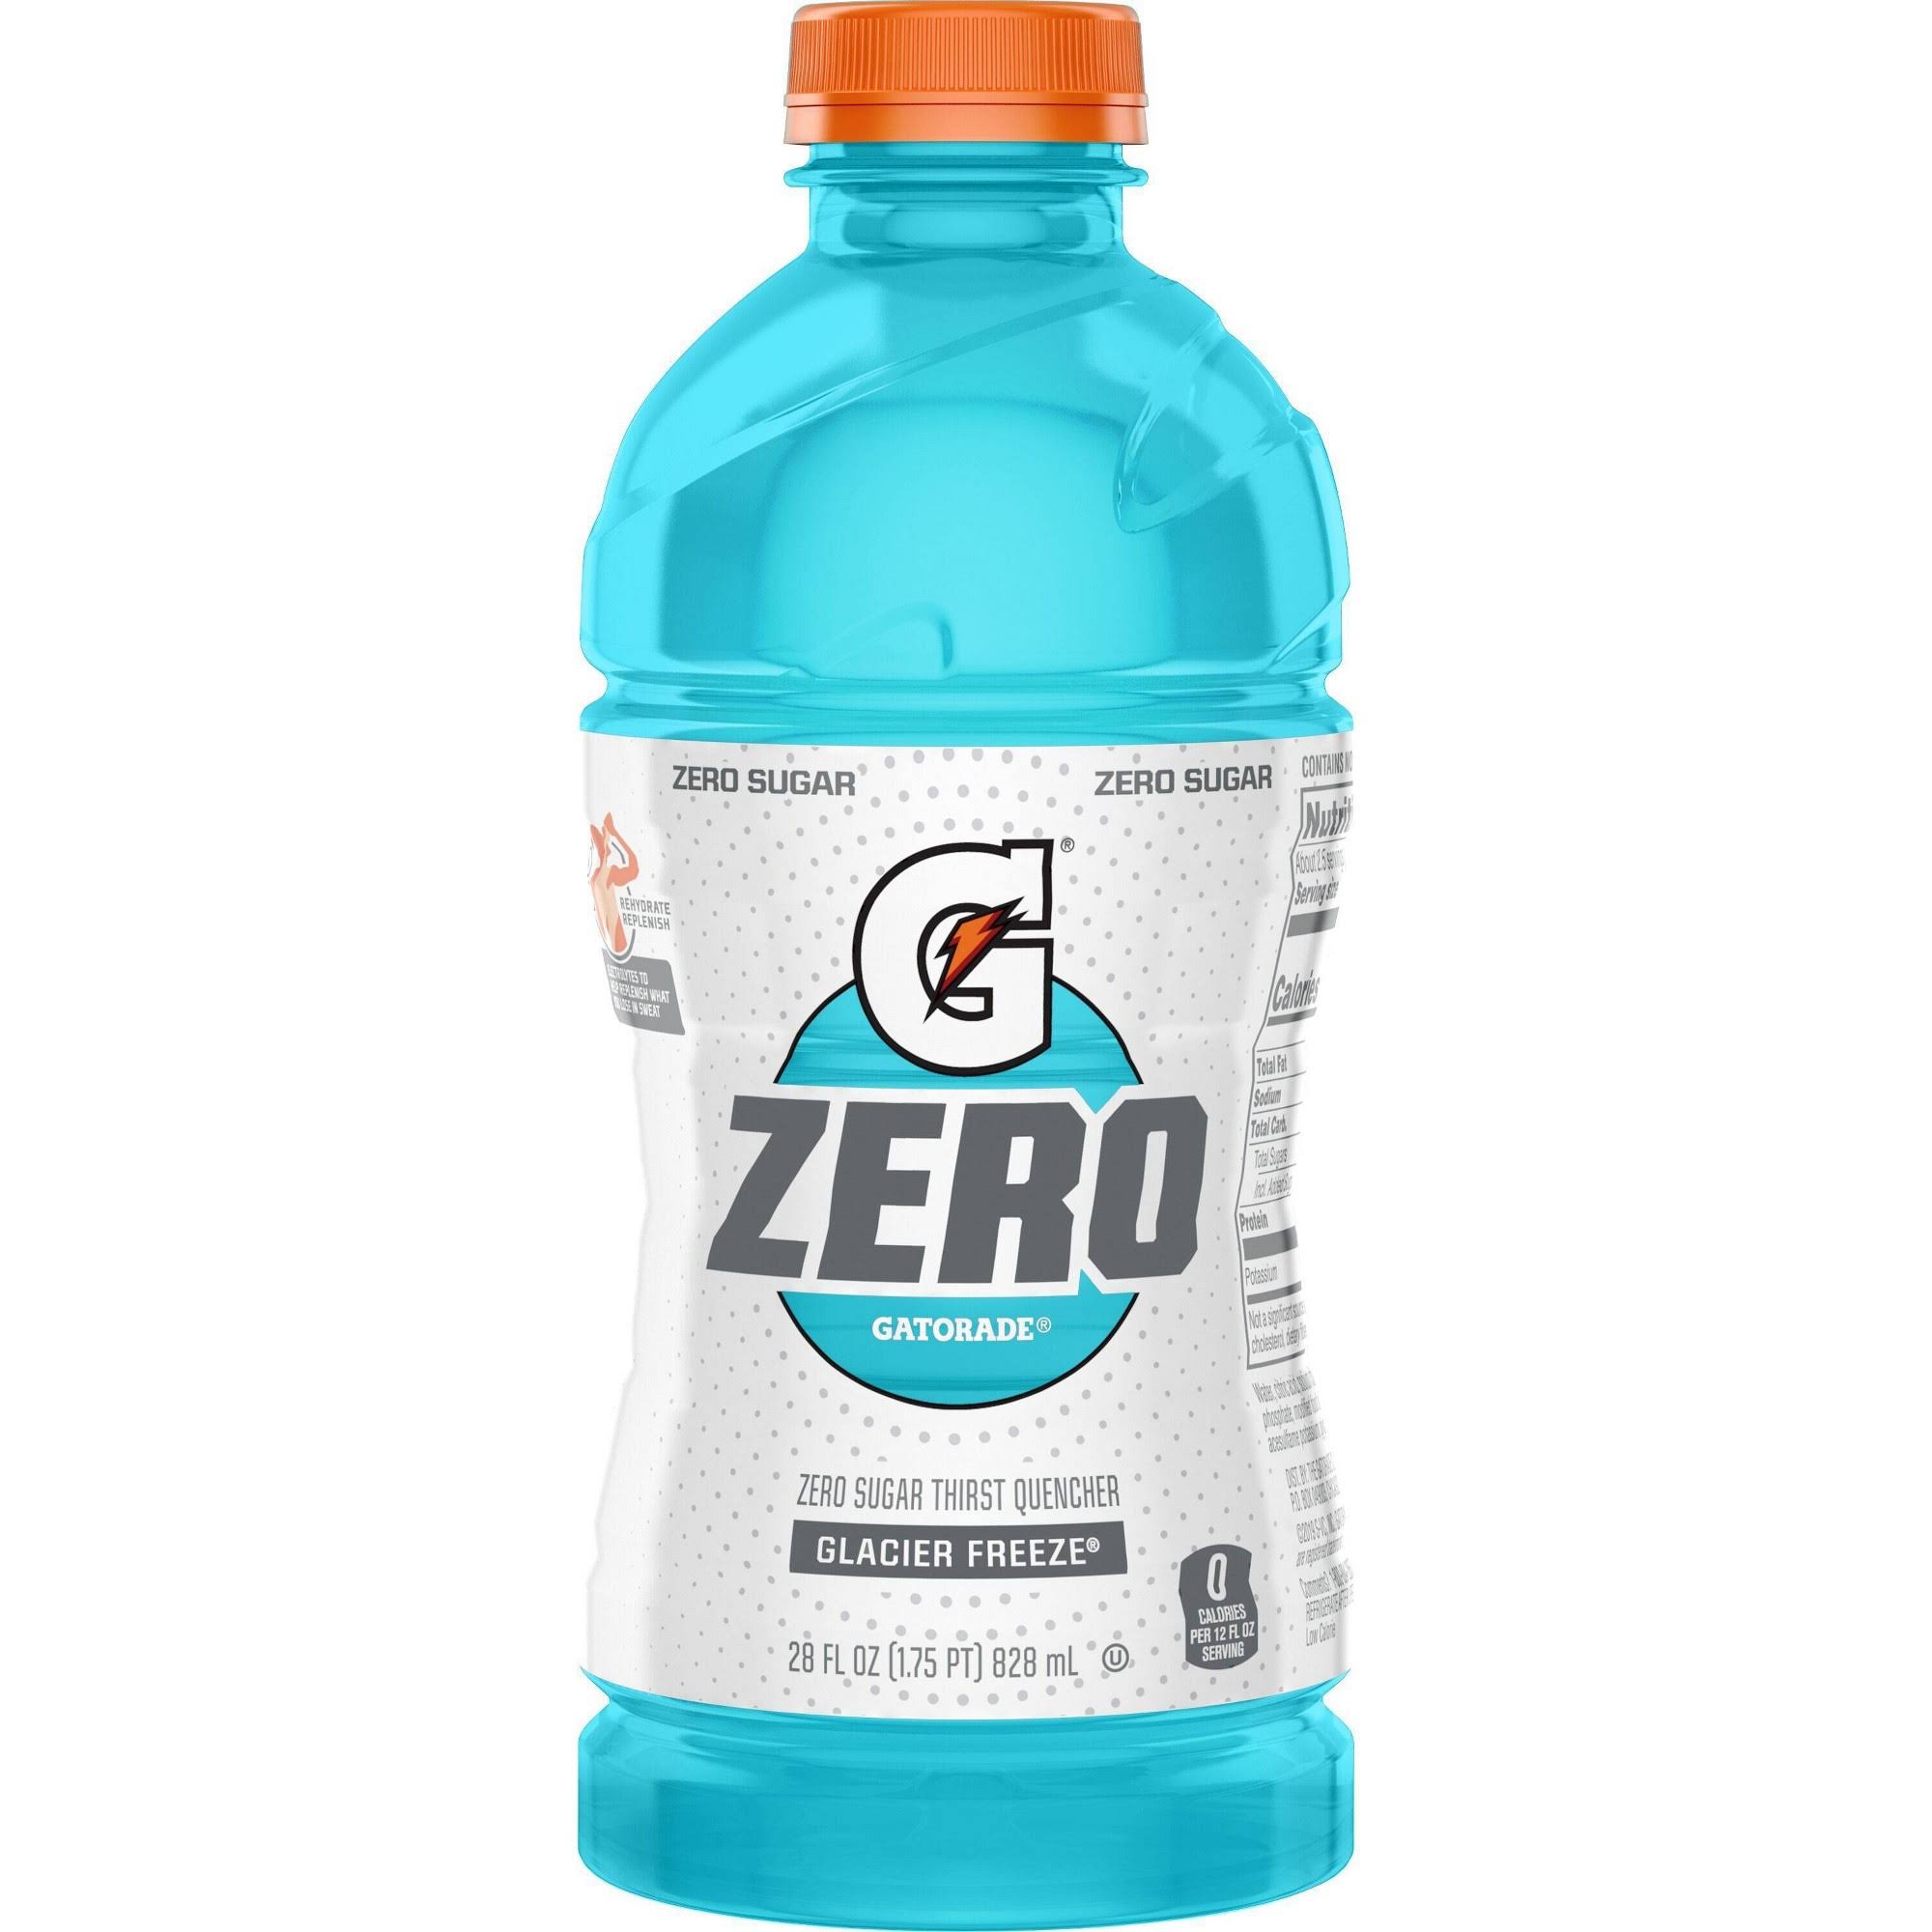 Gatorade Zero Thirst Quencher, Zero Sugar, Glacier Freeze - 28 fl oz